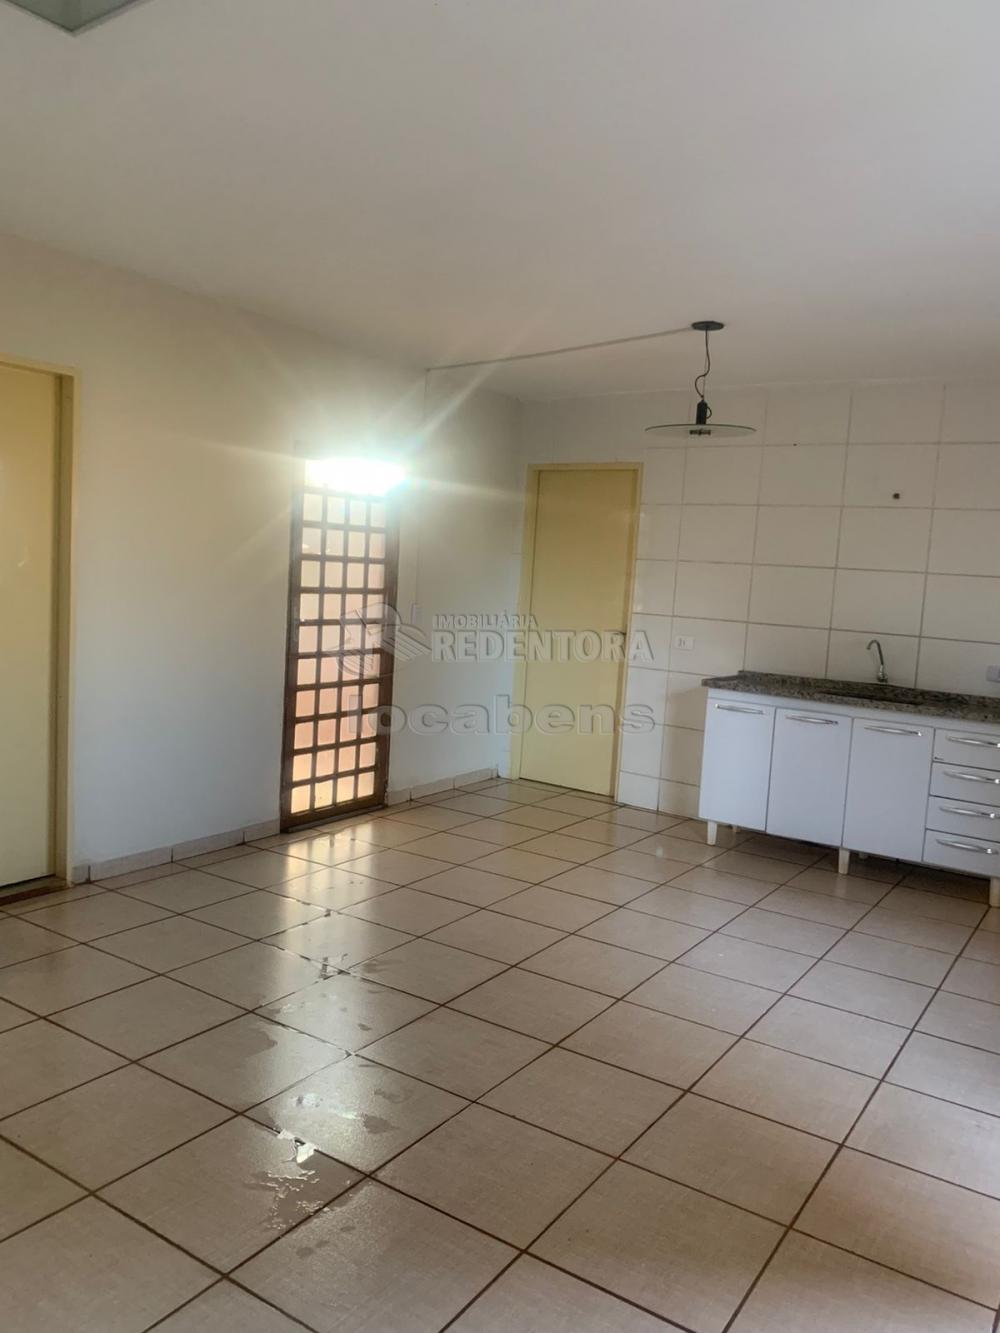 Alugar Casa / Padrão em São José do Rio Preto R$ 670,00 - Foto 3